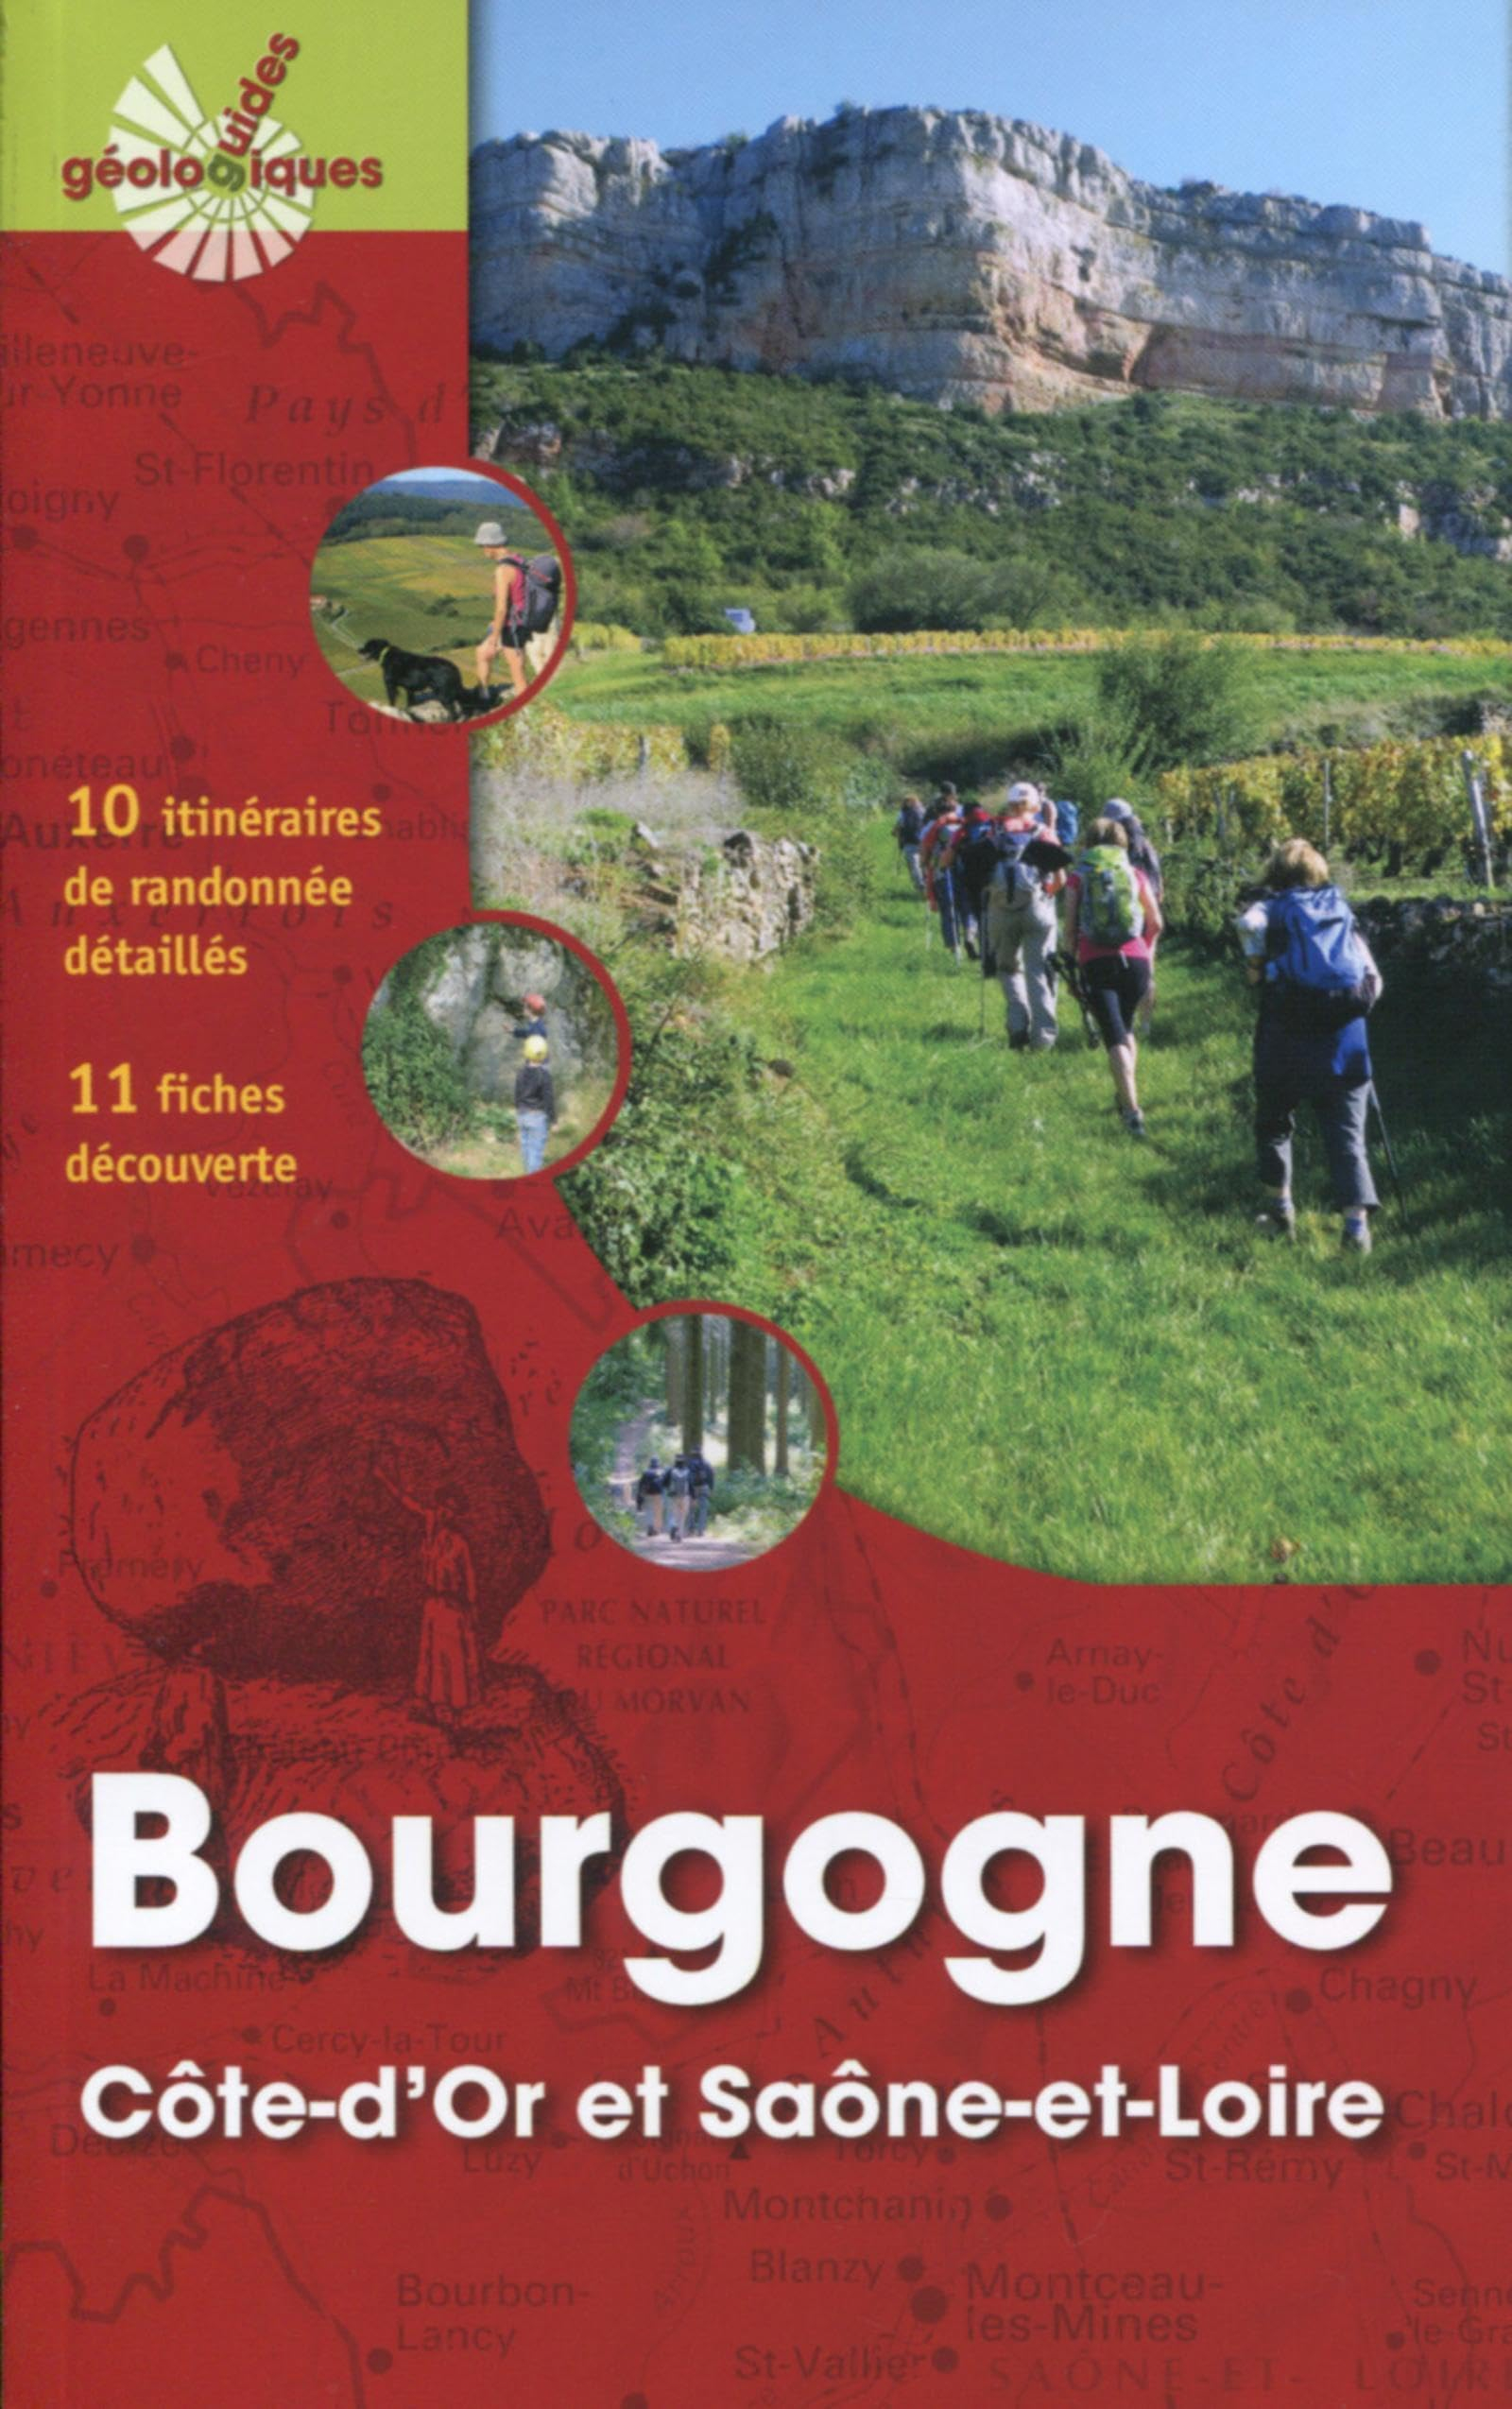 Bourgogne : Côte-d'Or et Saône-et-Loire : 10 itinéraires de randonnée détaillés, 11 fiches découvert